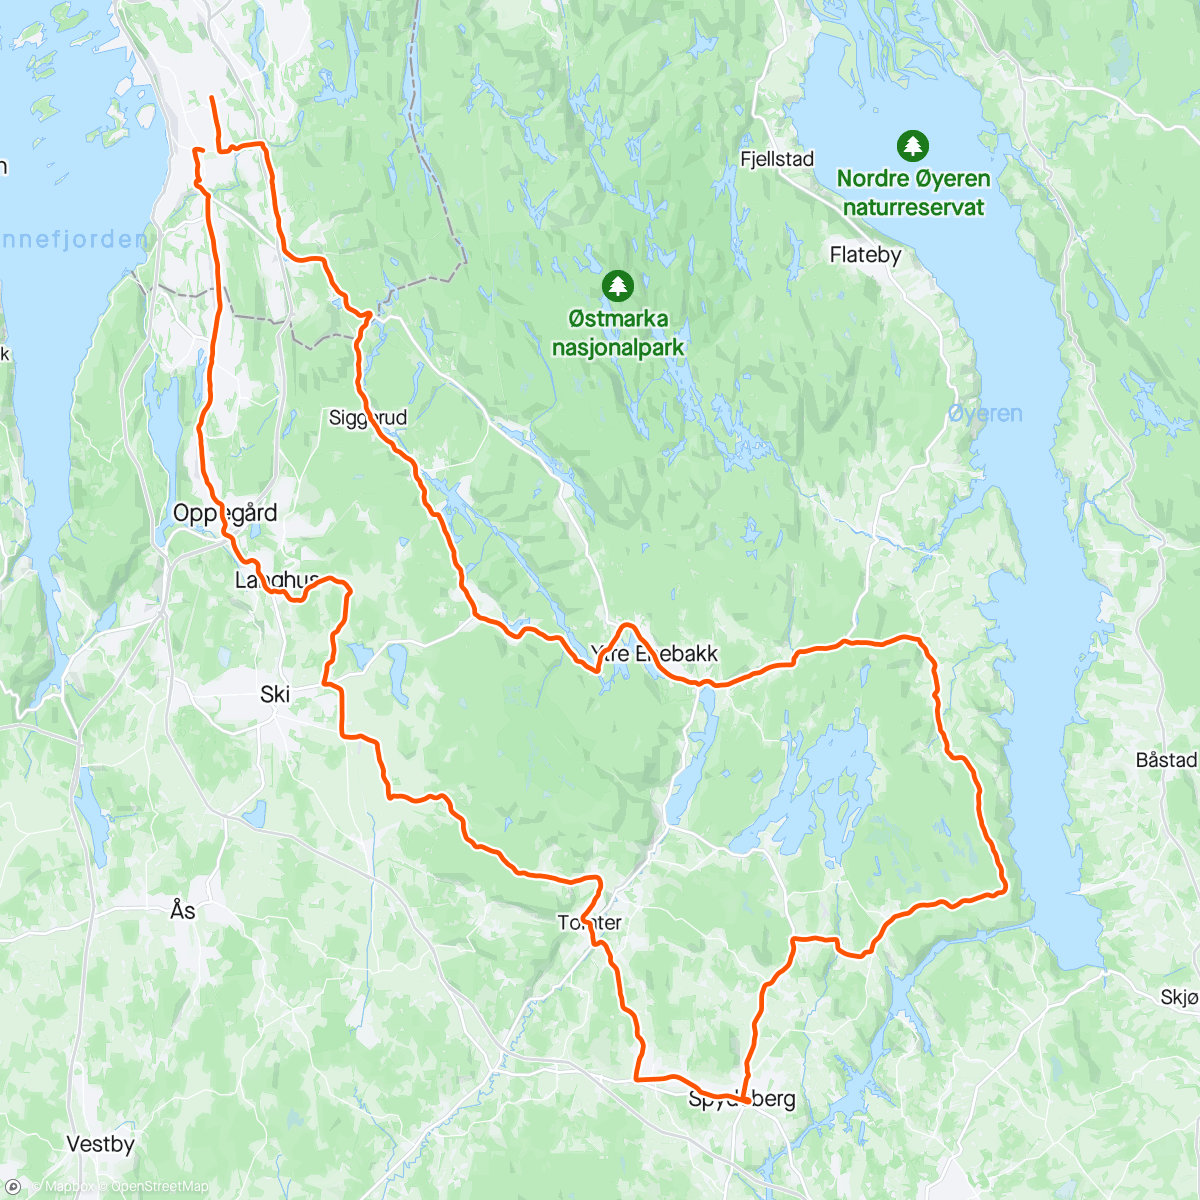 Mapa da atividade, Enebakk, Spydeberg, ski og Poppel 🚴🏻‍♂️☀️🍾🍾